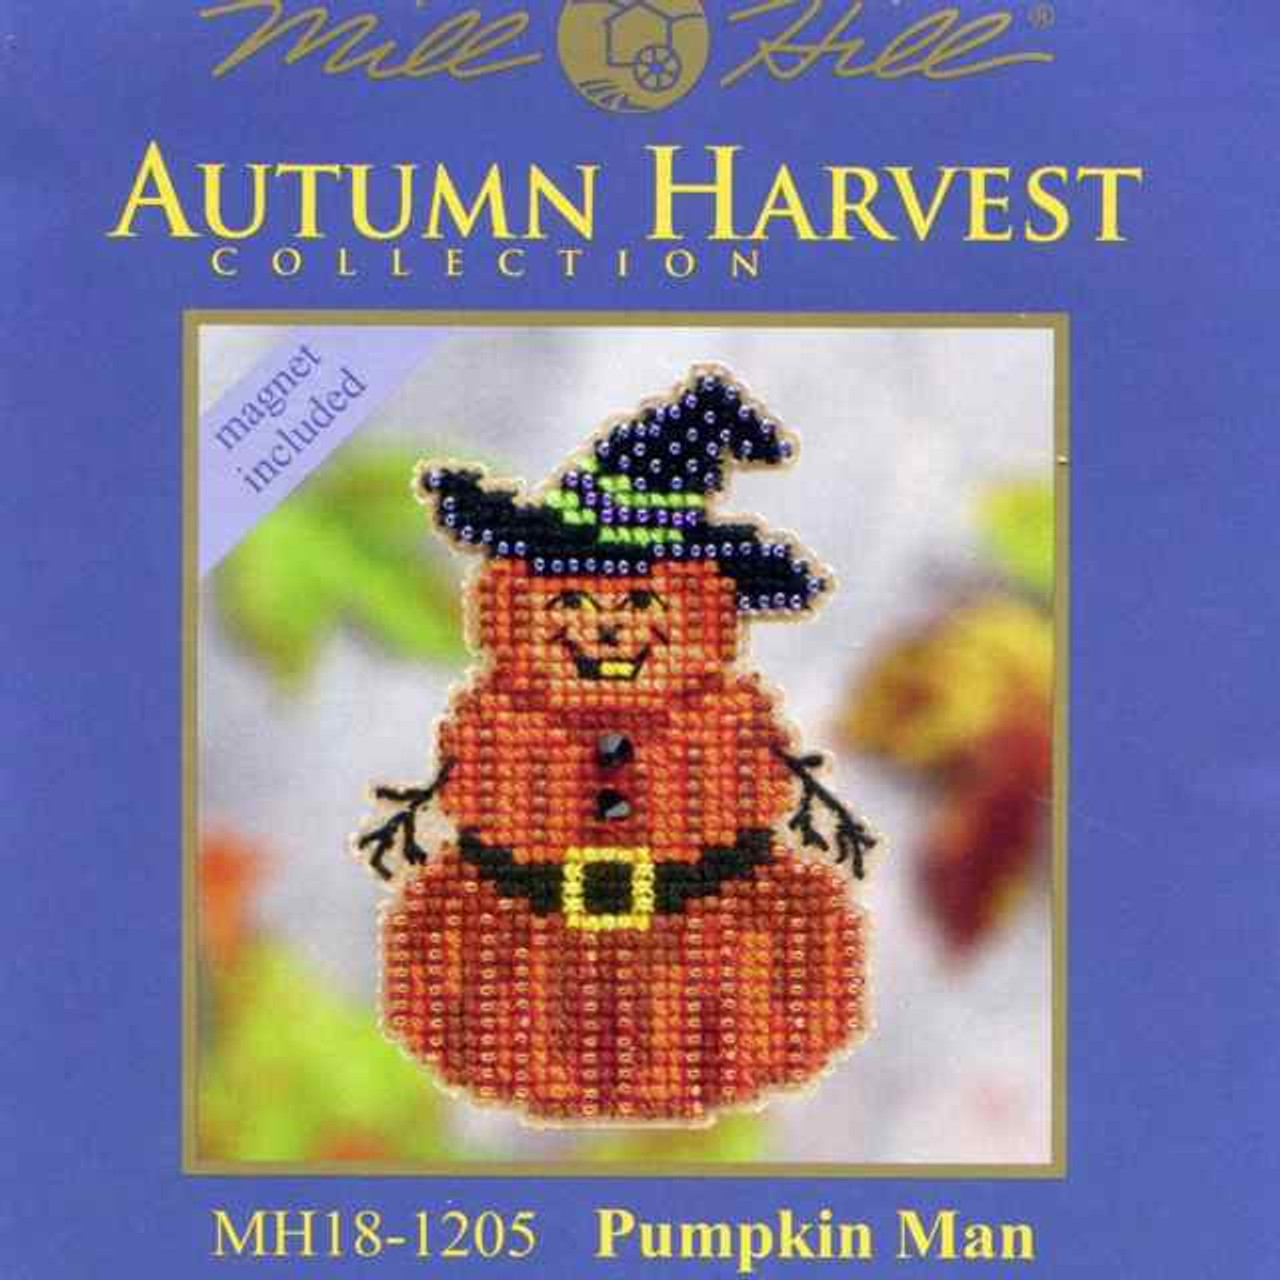 Pumpkin Man Halloween Bead Ornament Kit Mill Hill 2011 Autumn Harvest